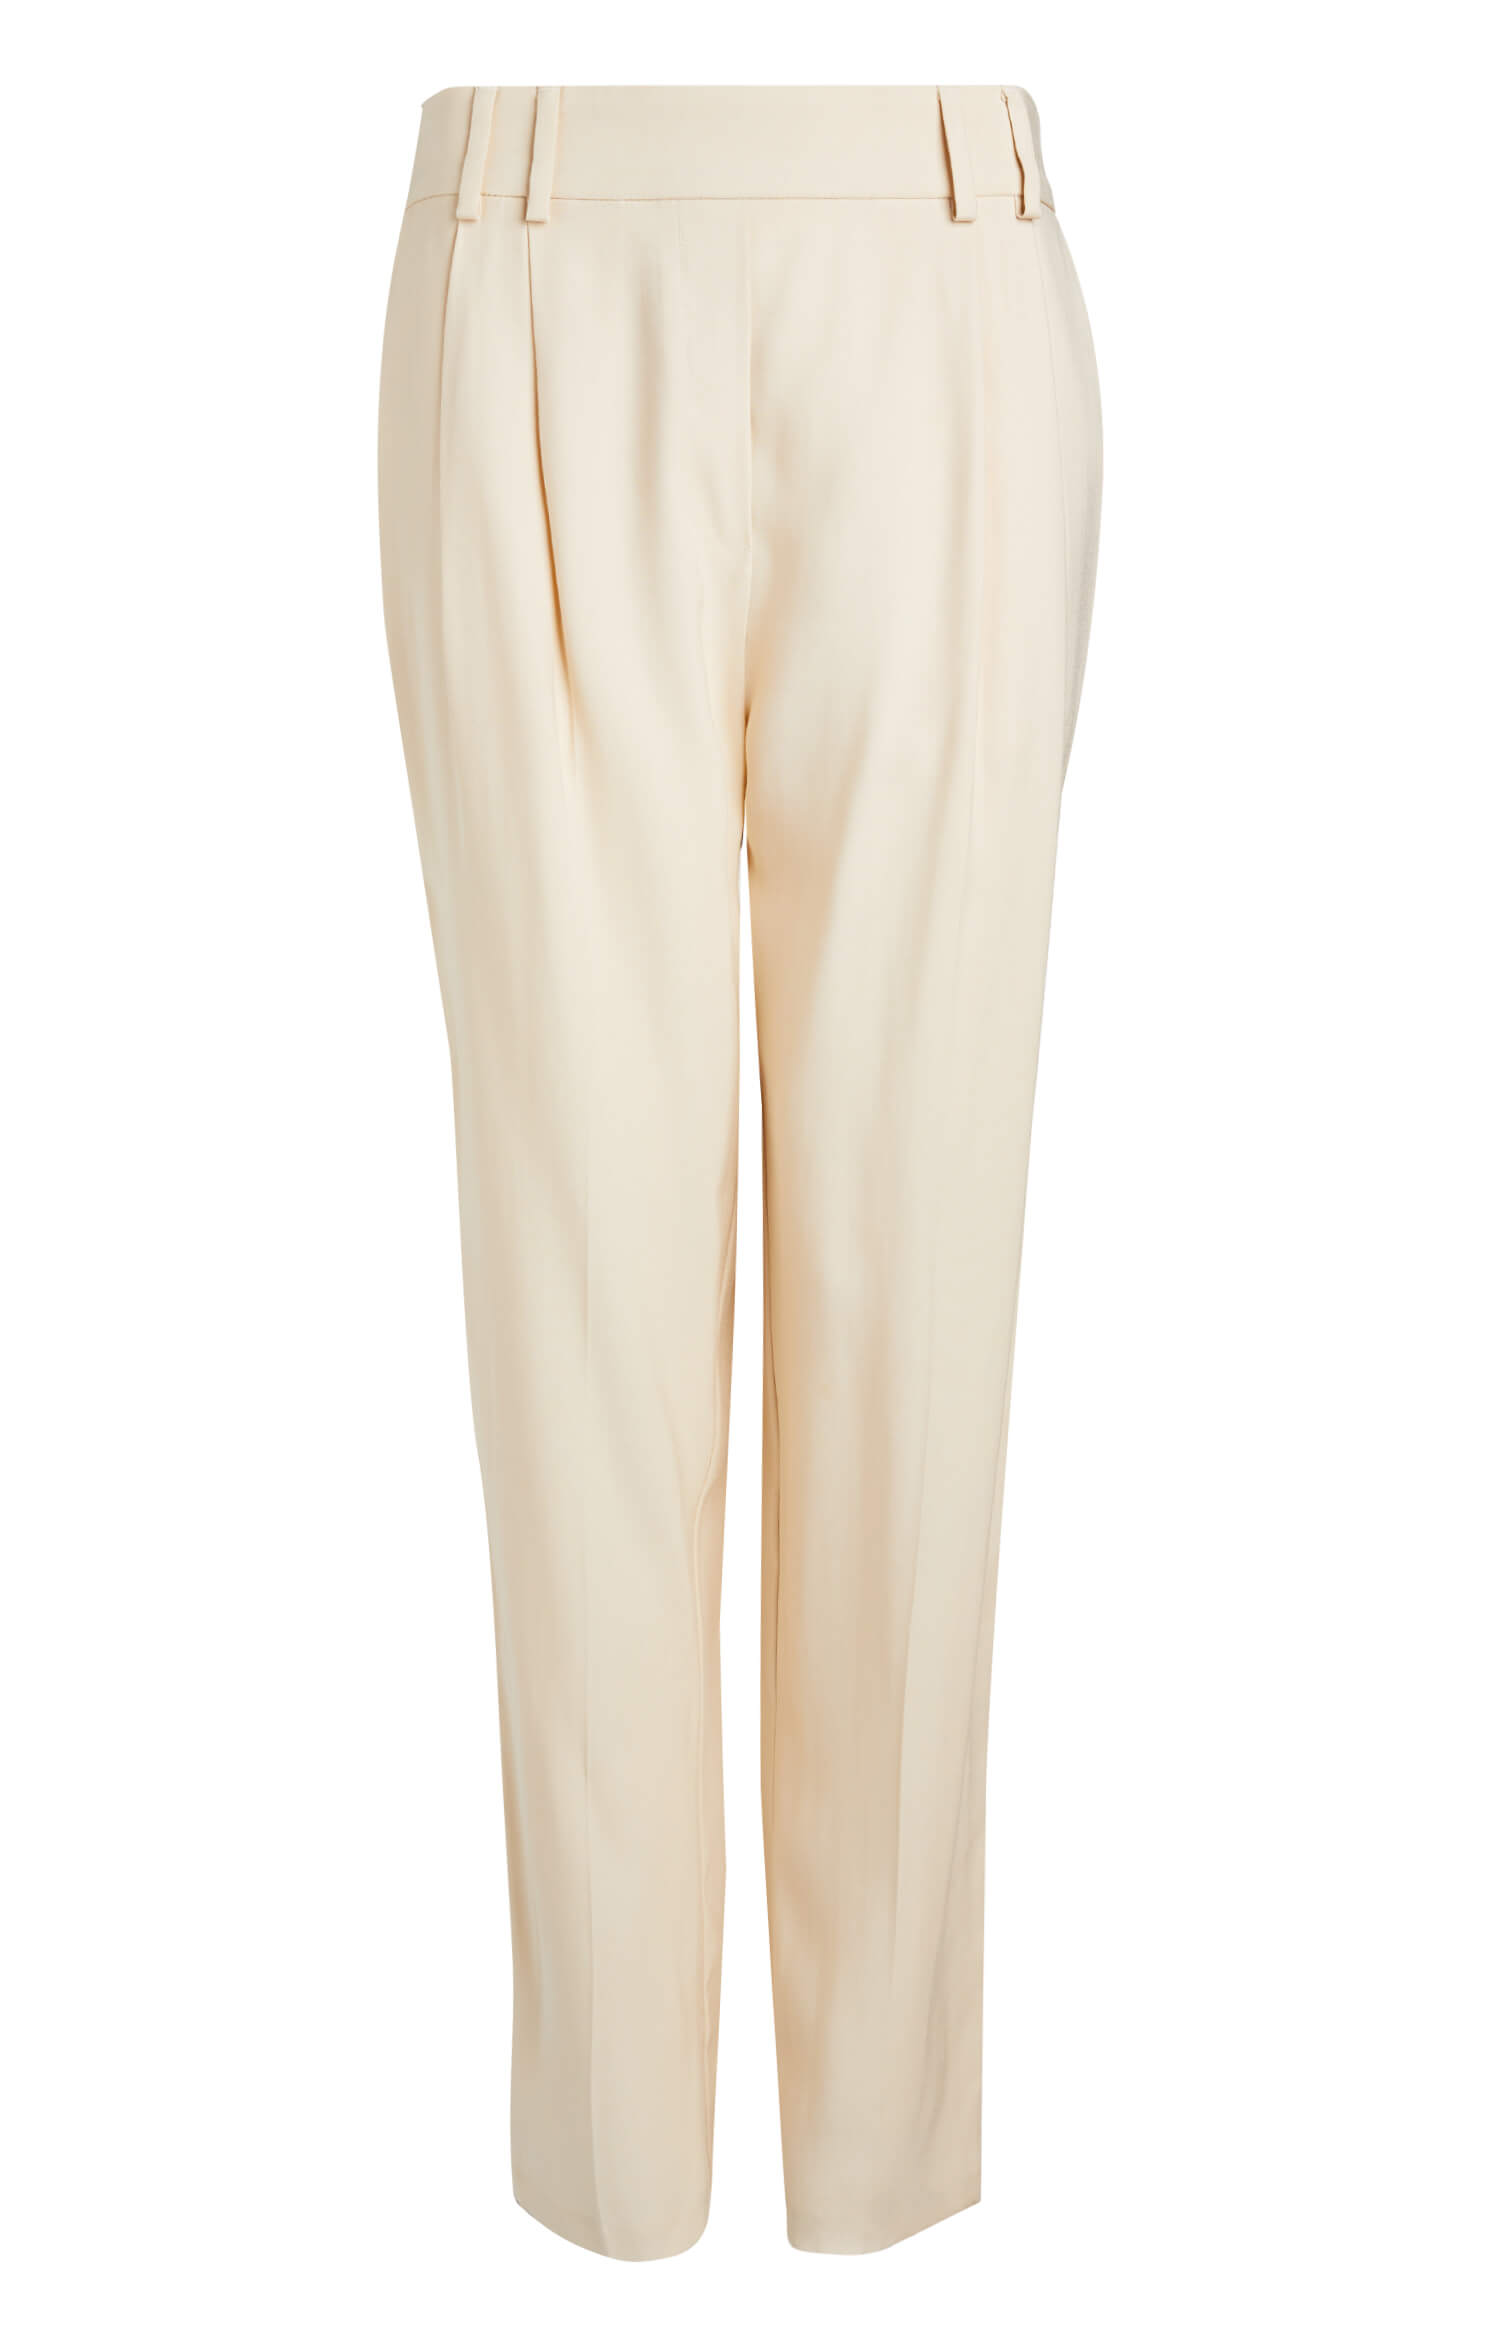 Chaquetas y trajes para mujer con mucho estilo - Pantalon beige de tela 15E